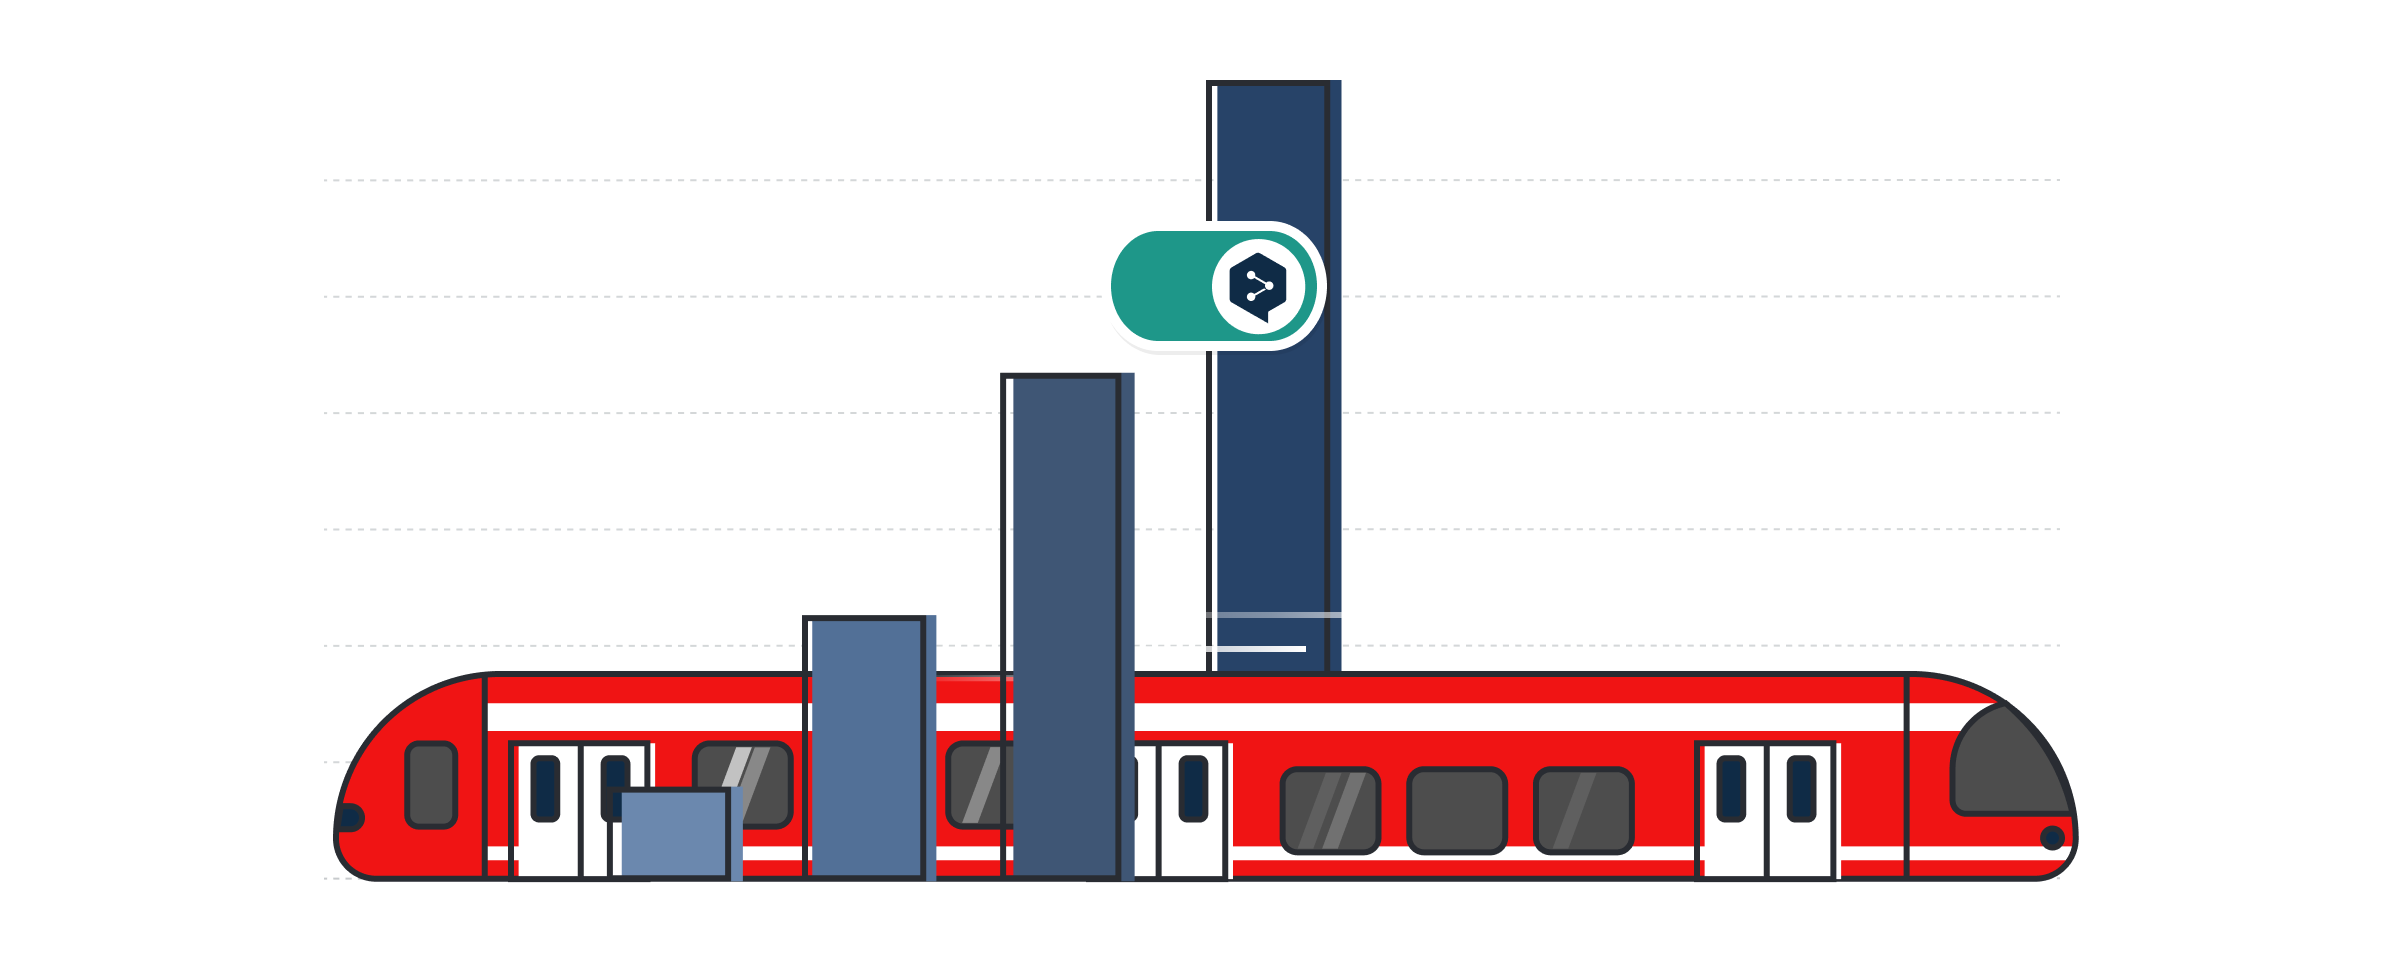 Иллюстрация с изображением красного поезда DB и логотипа DeepL Pro над гистограммой